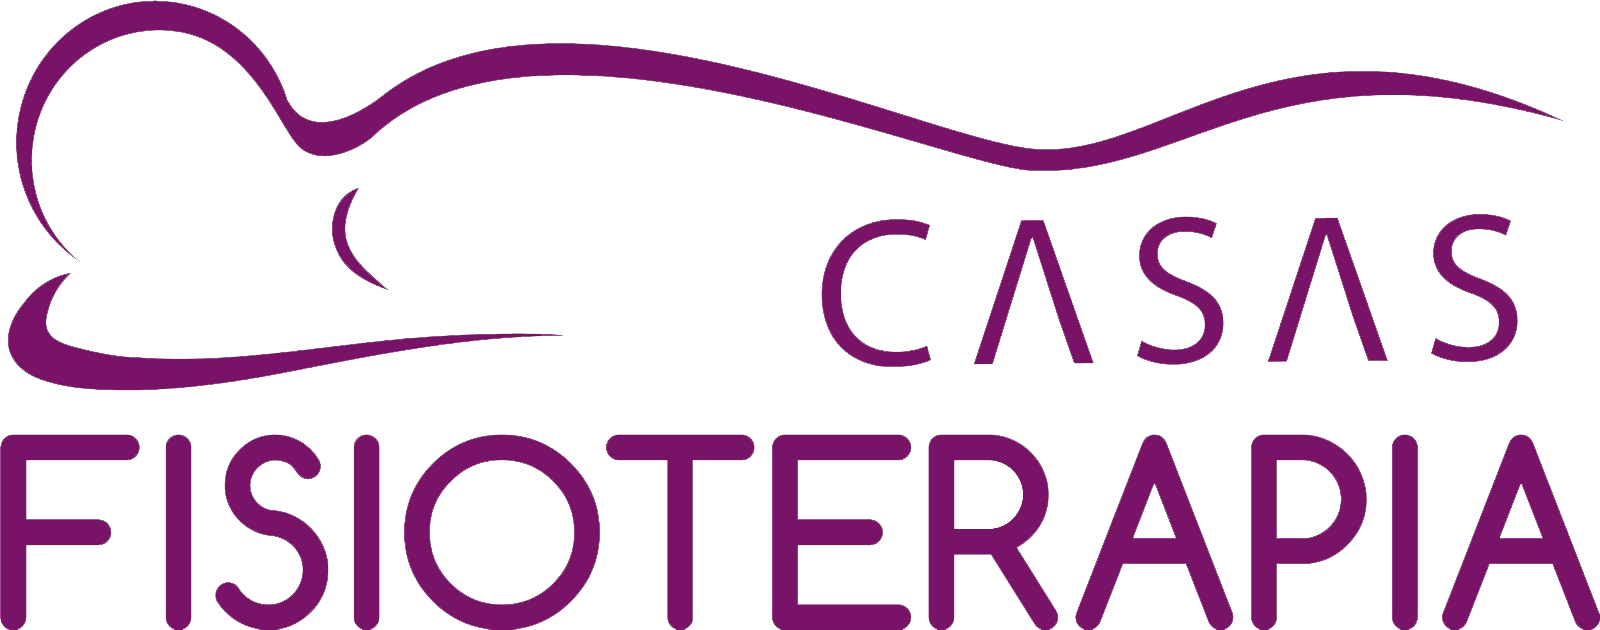 Fisioterapia Alberto Casas Logo